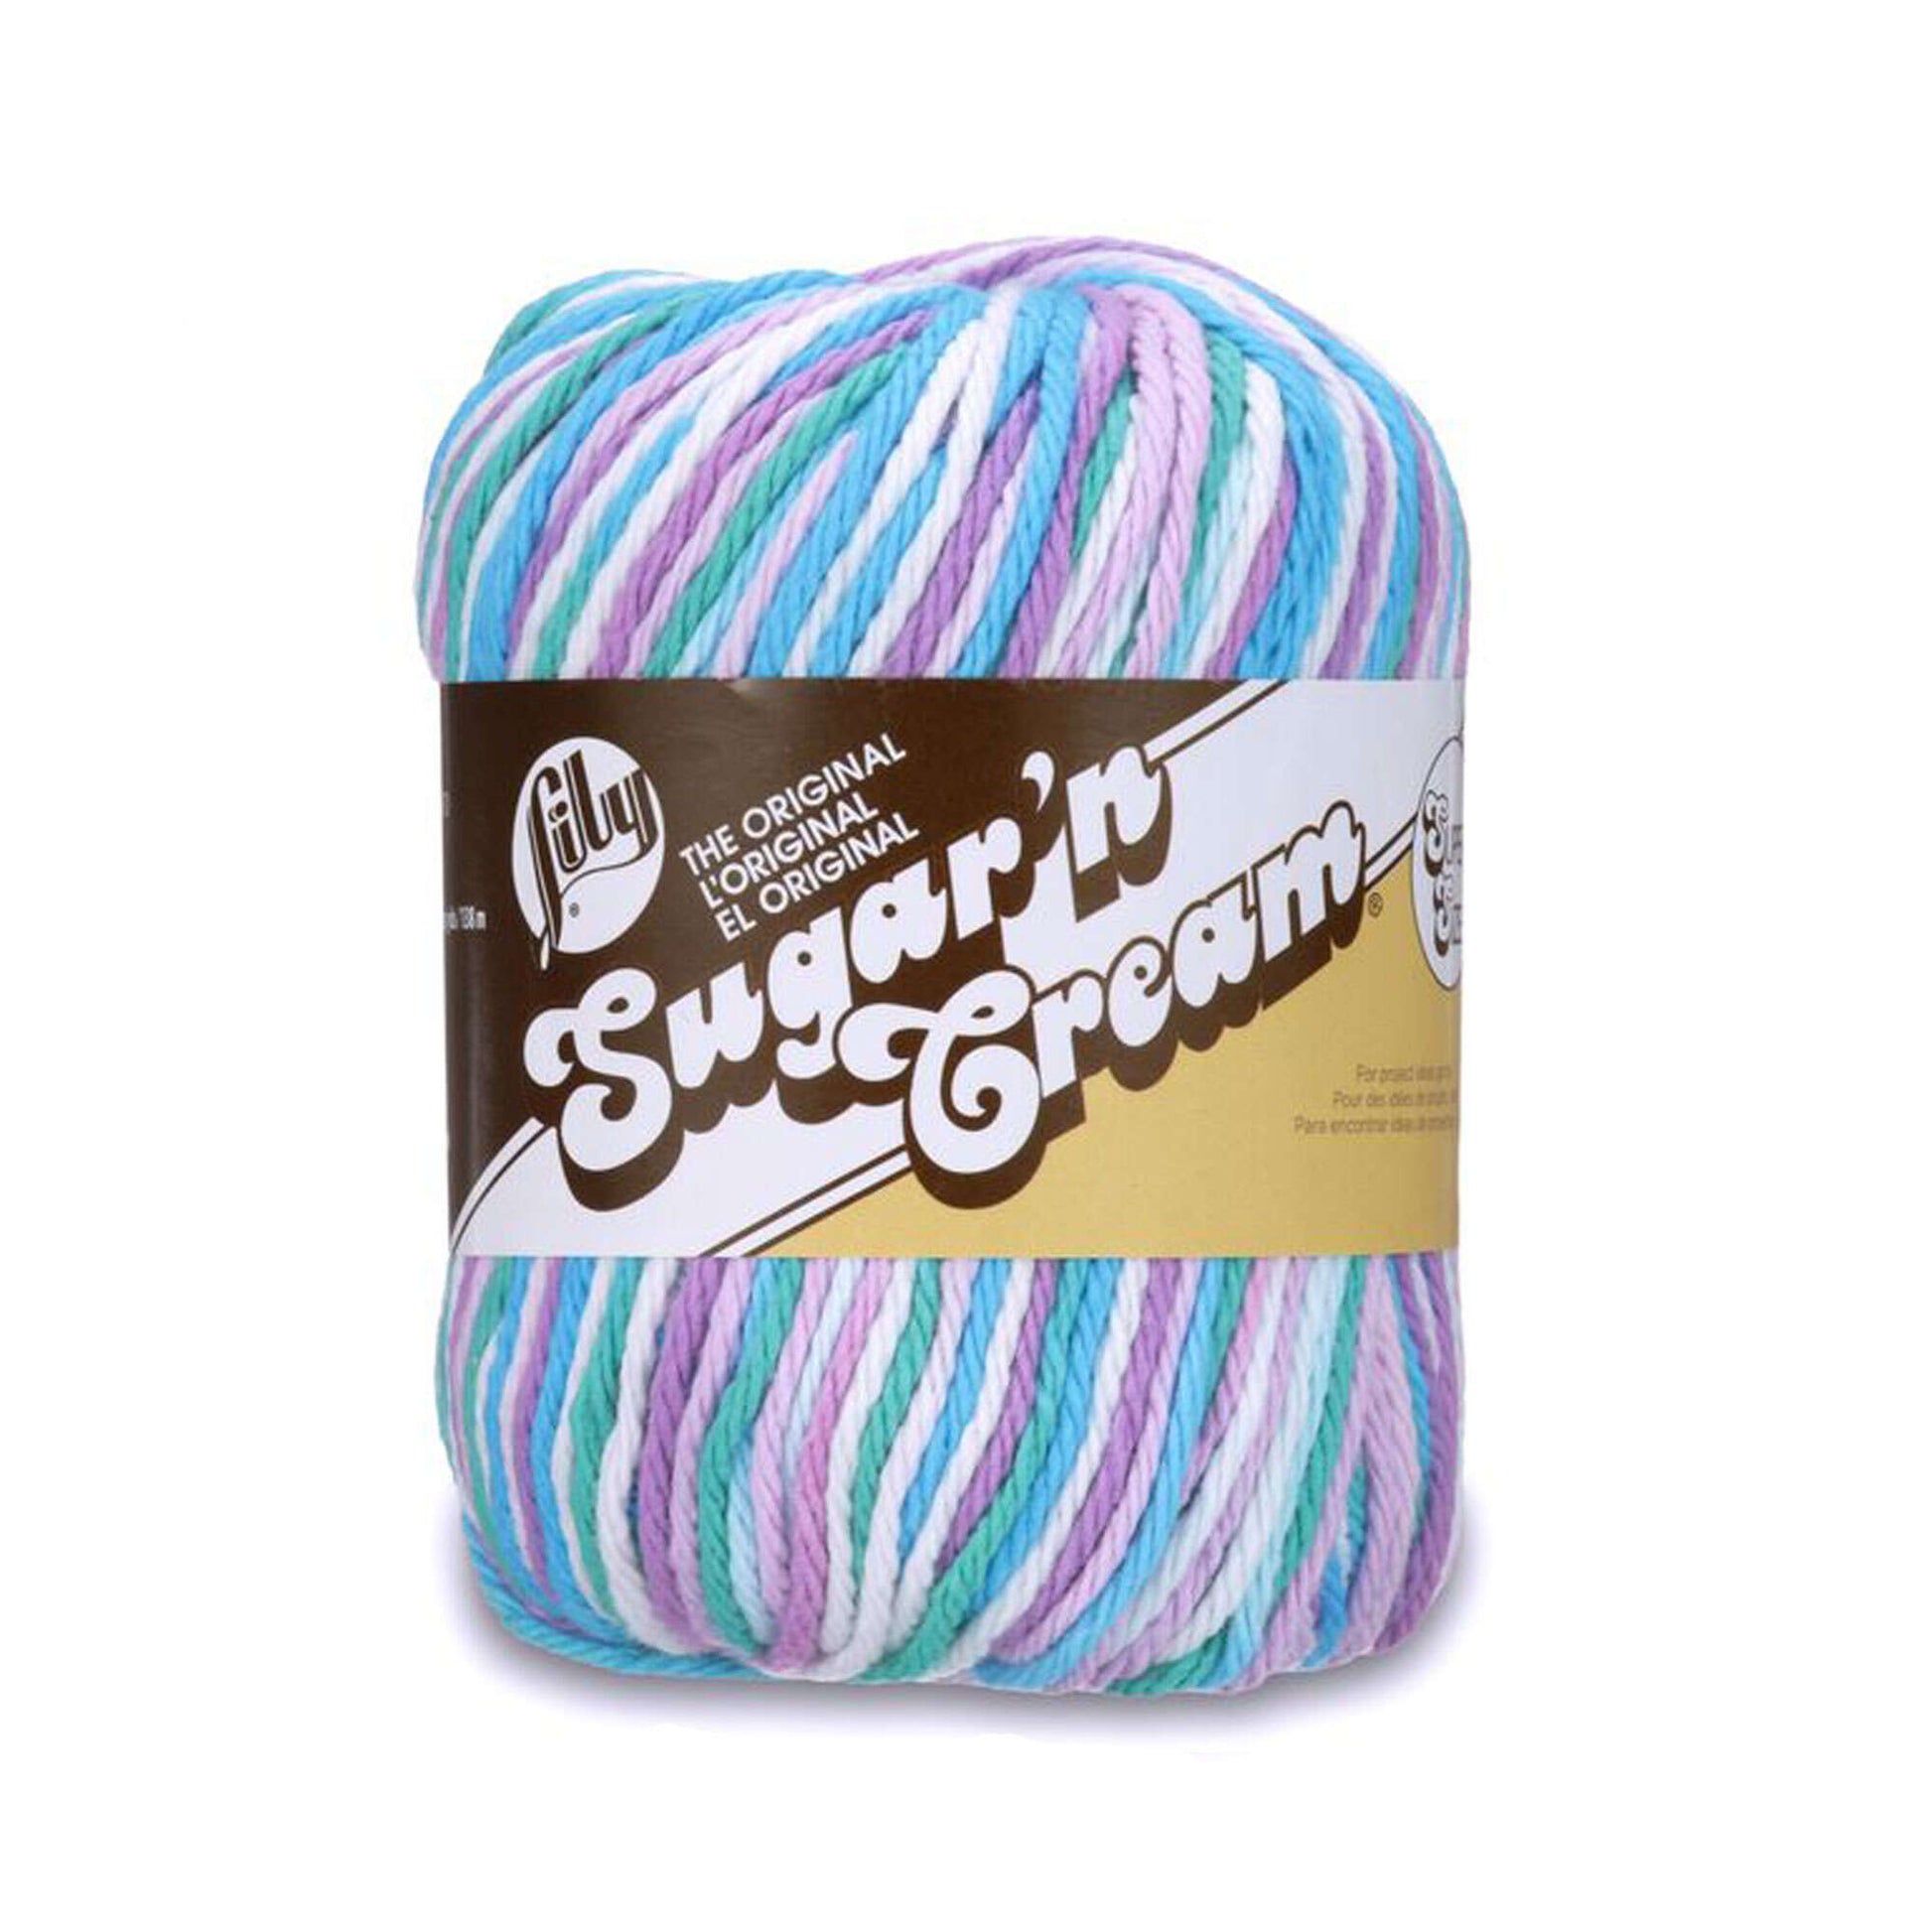 Lily Sugar'n Cream Super Size Ombres Yarn Beach Ball Blue